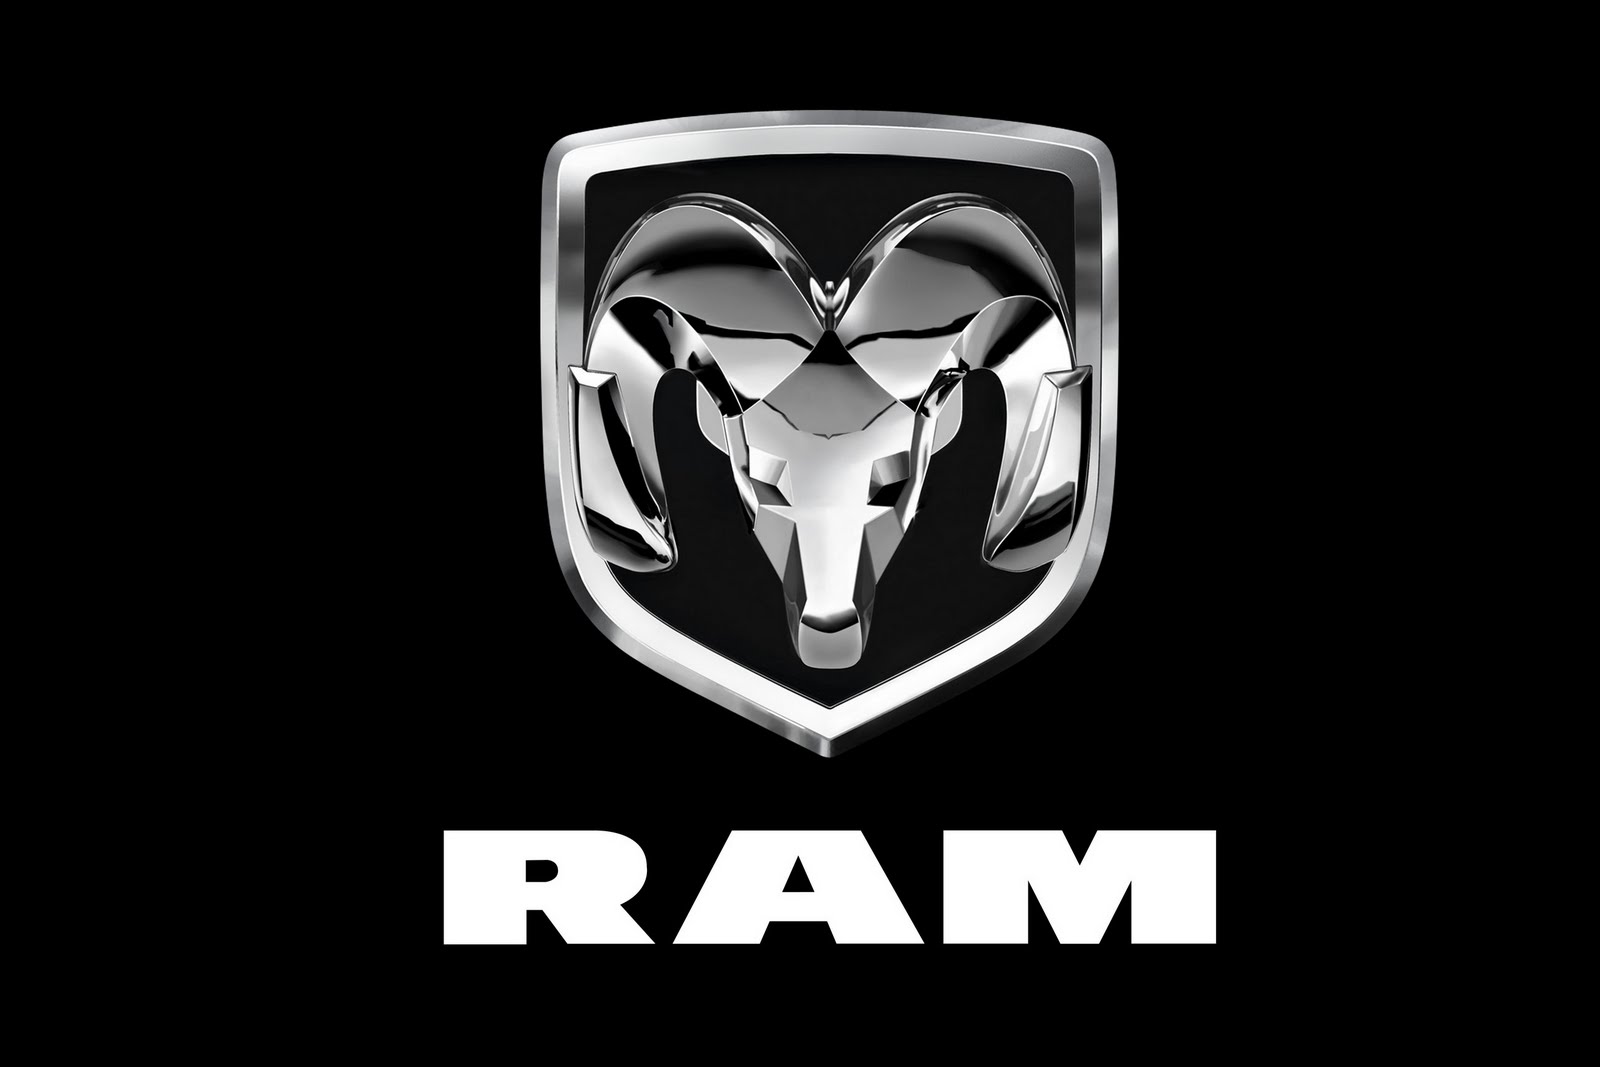 http://1.bp.blogspot.com/_FoXyvaPSnVk/S_2M2J4xz8I/AAAAAAAC5Ig/fILwuMG0TmA/s1600/2011-Ram-Logo-31.jpg